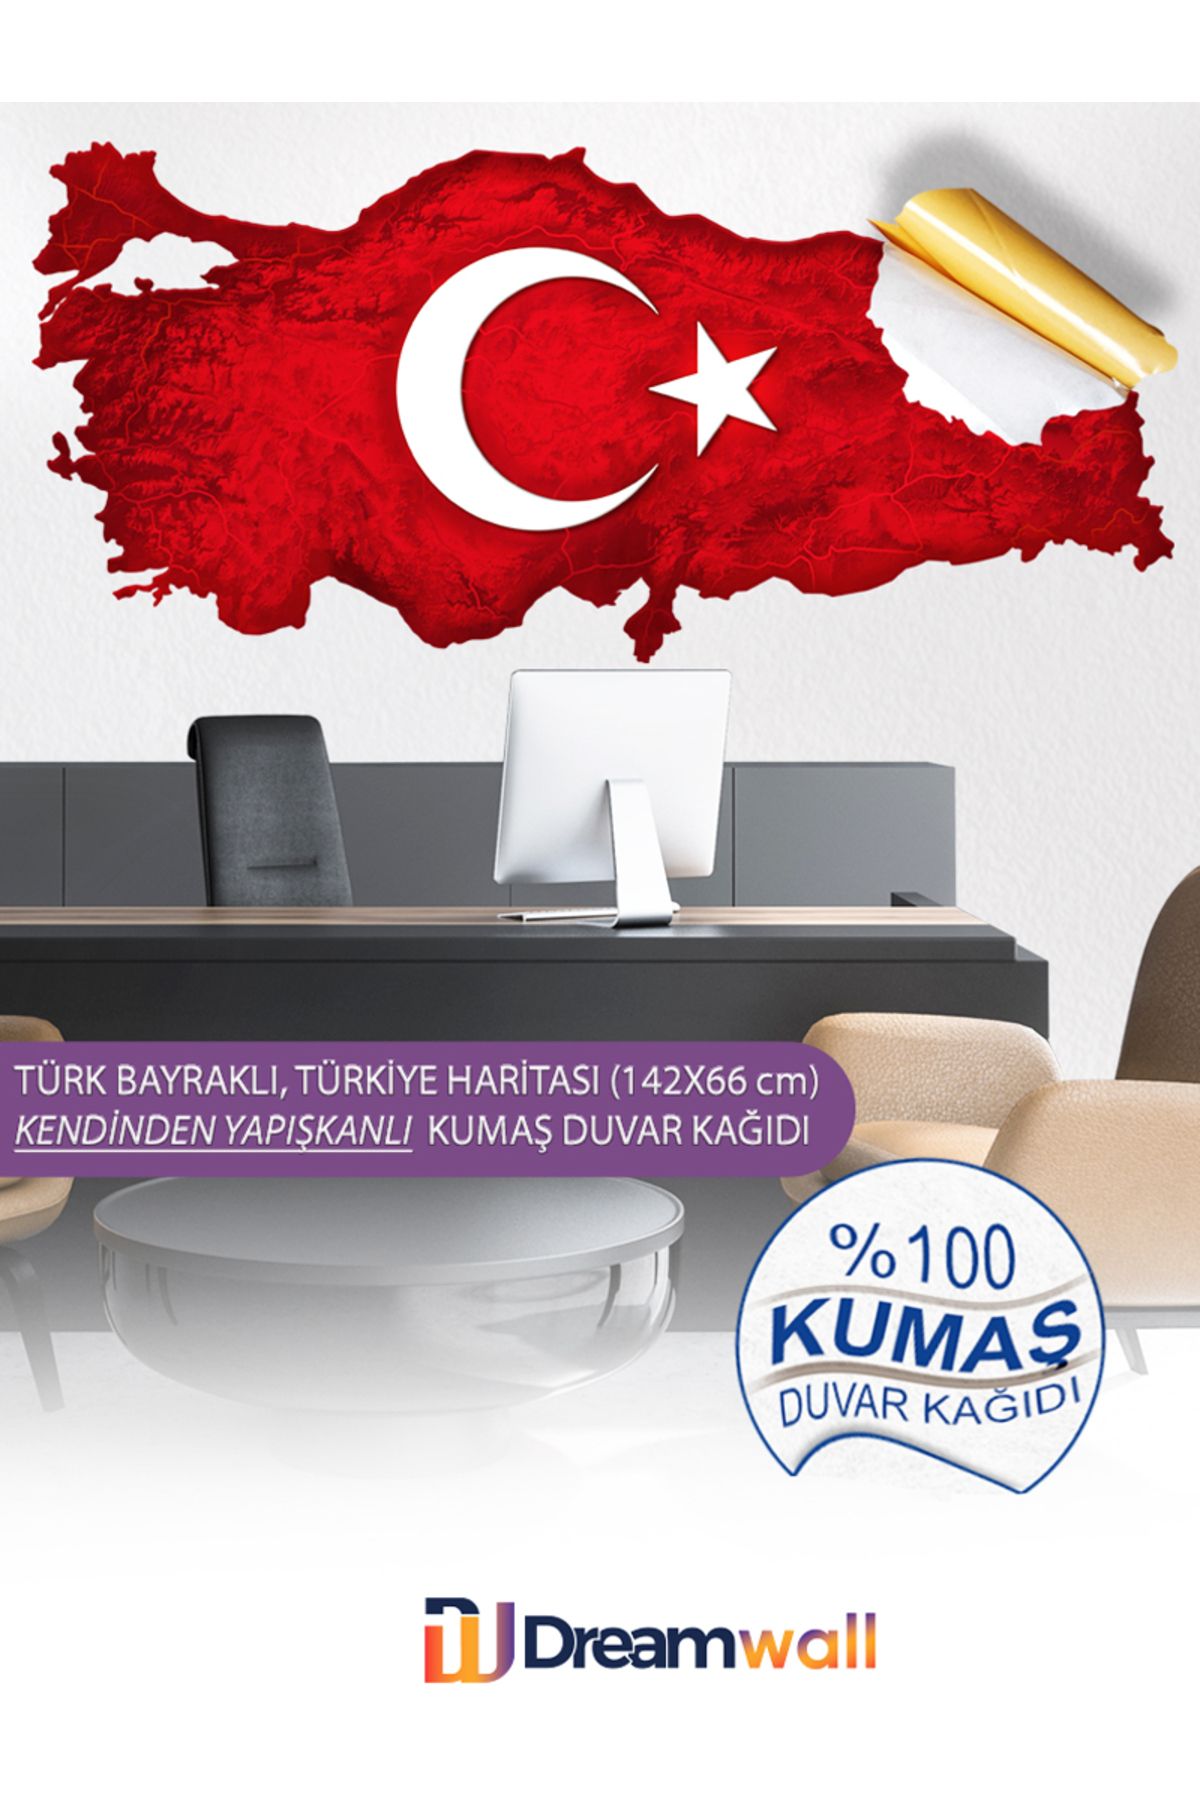 dreamwall Türkiye Haritası, Türk Bayrağı Kendinden Yapışkanlı Duvar Kağıdı